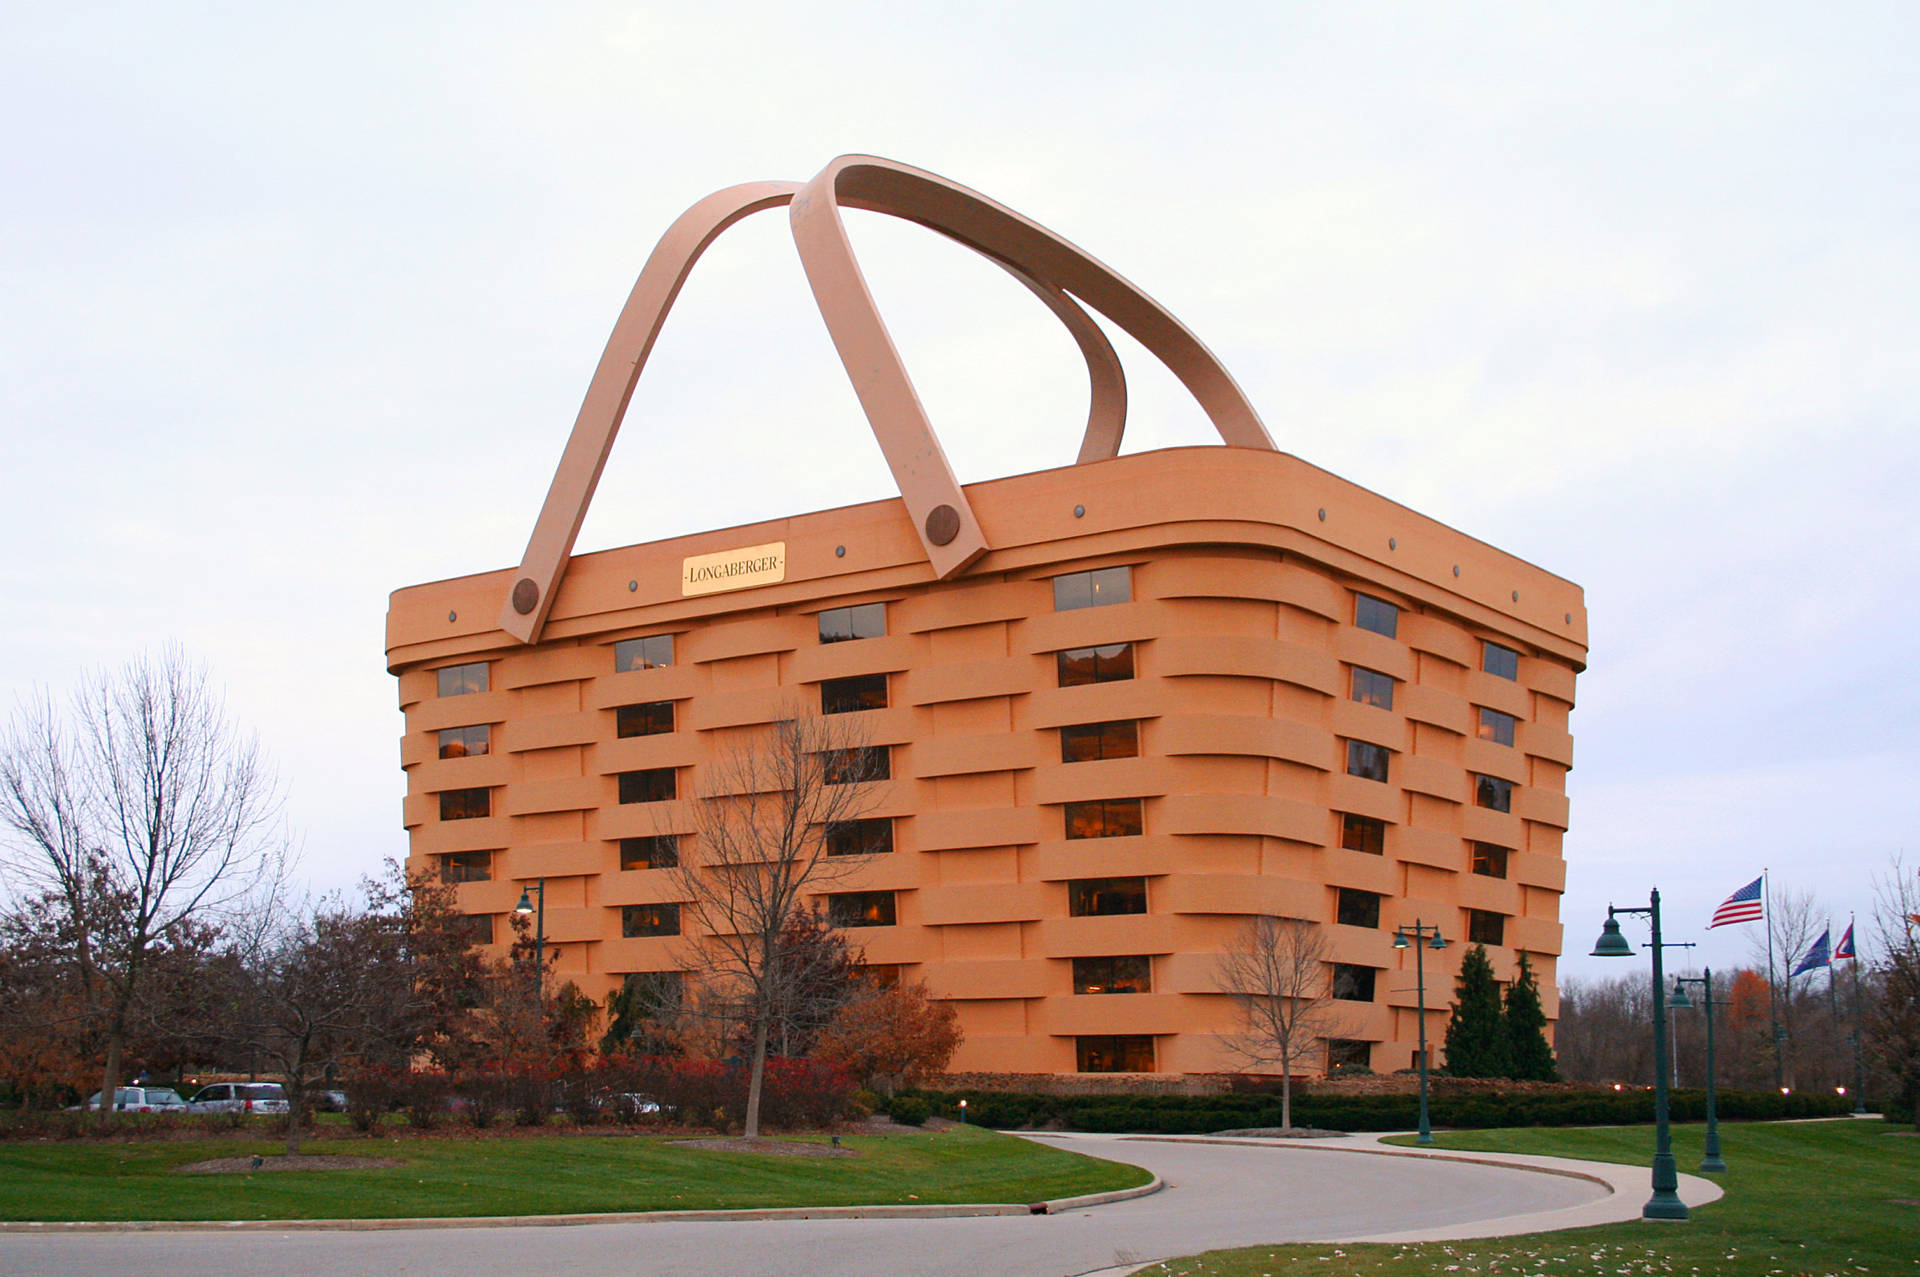 Big Basket Building Background